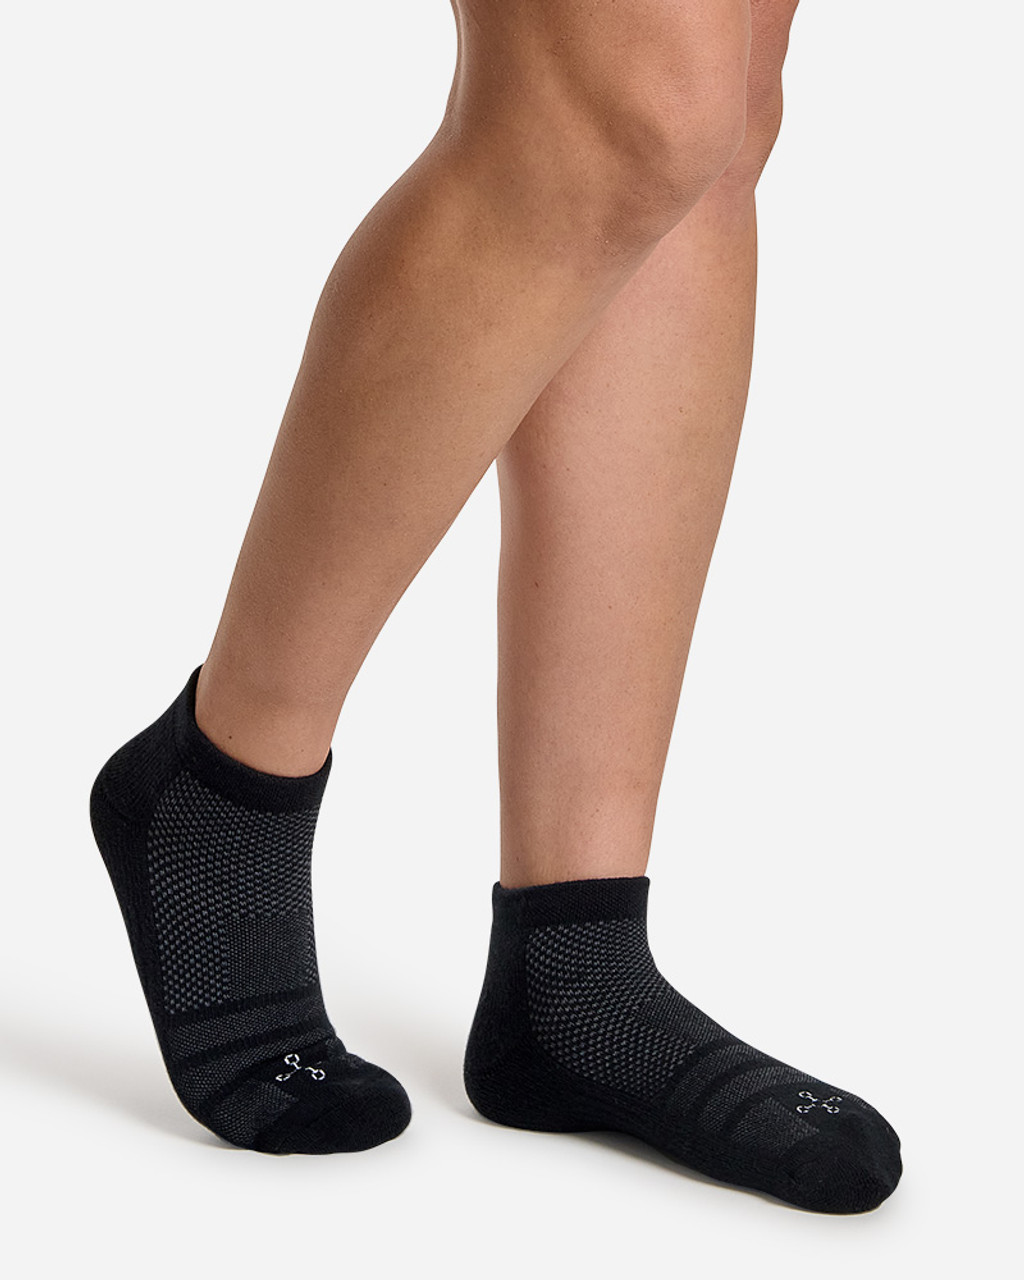 Compression Sock Ankle, White - Zeropoint Compression